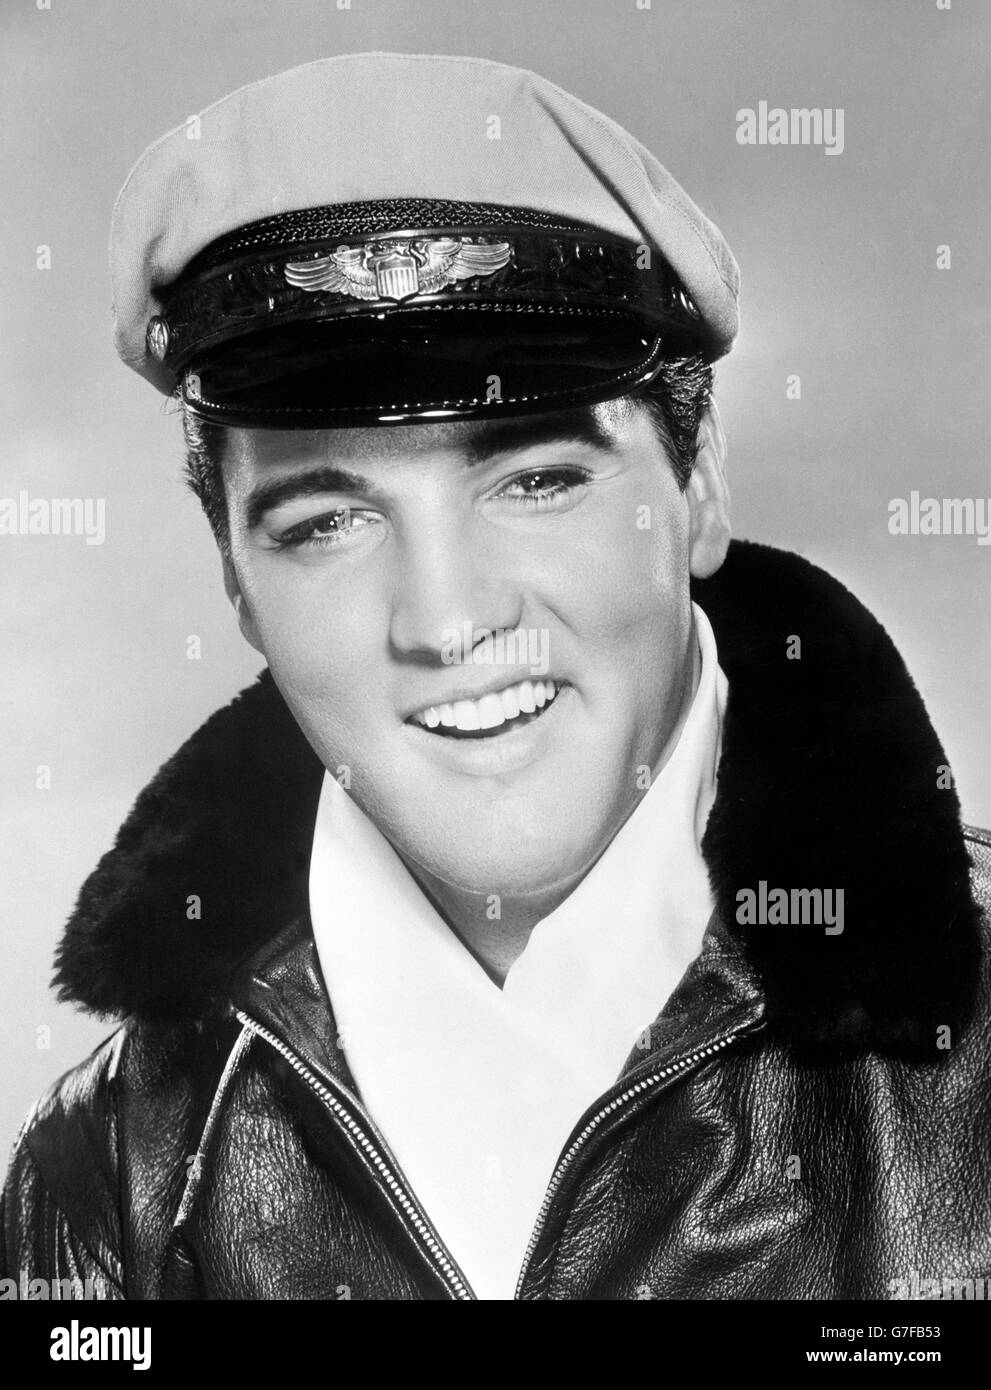 Film - c'est arrivé à l'exposition mondiale - Elvis Presley.Elvis Presley en tant qu'aviateur pour son rôle dans MGM, c'est arrivé à l'exposition universelle. Banque D'Images